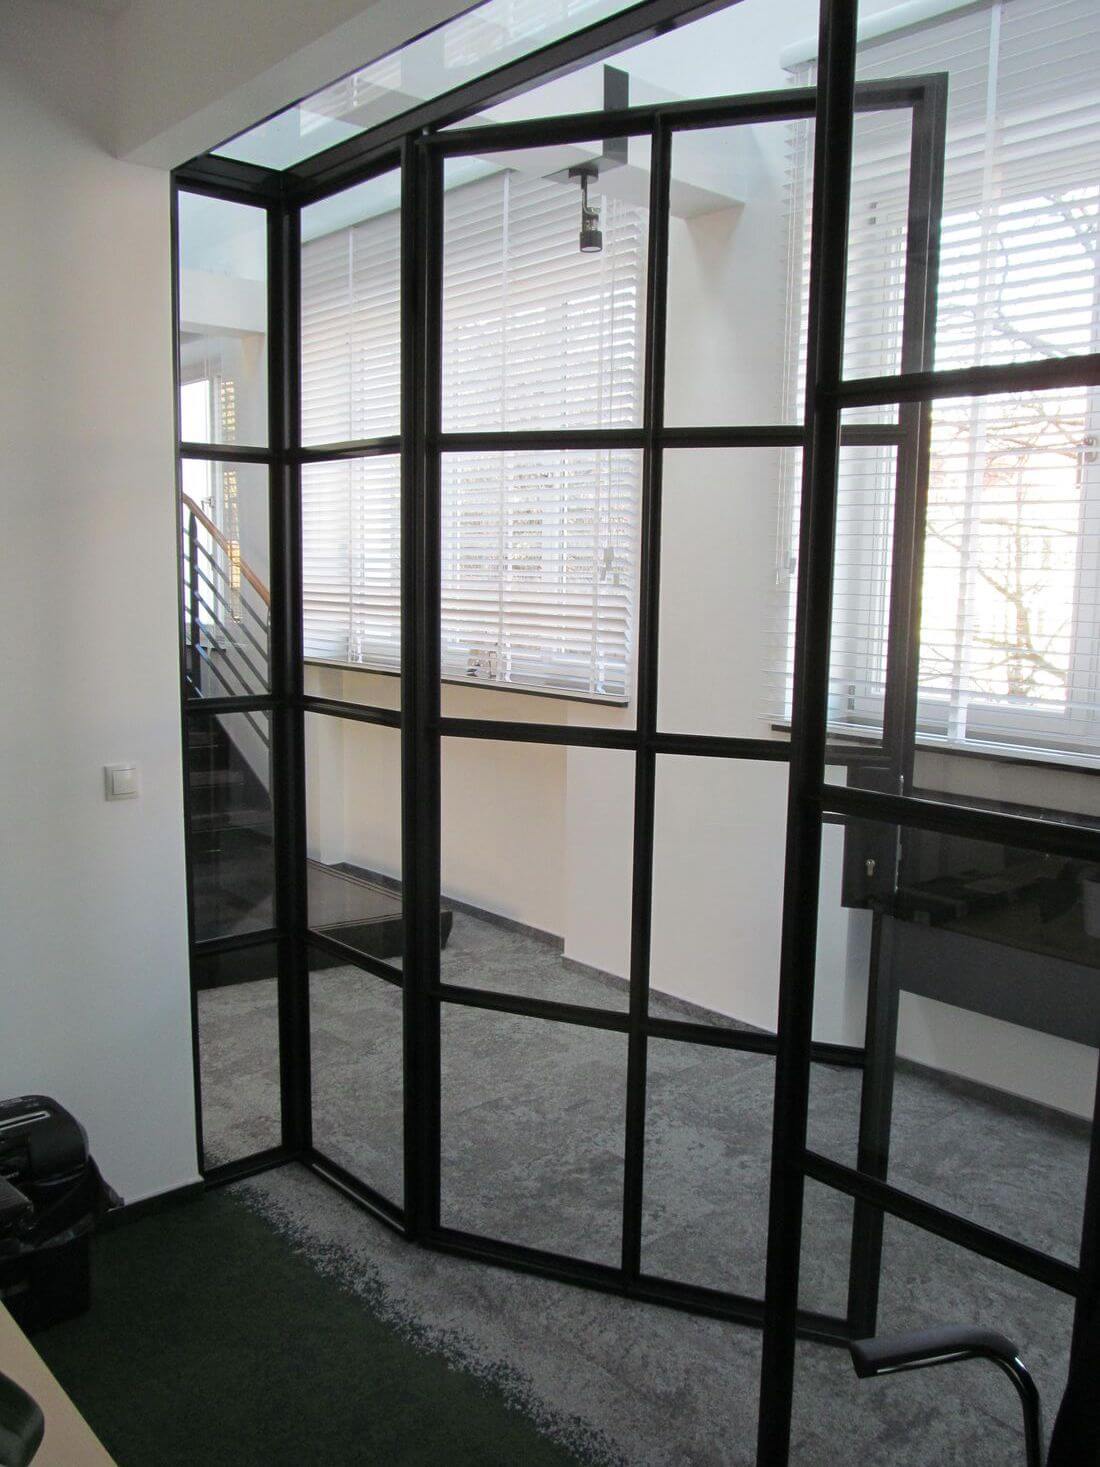 Oficina EIP en Polonia - el sistema de Puertas de Cristal y Paredes de Vidrio de vidrio reforzado y acero estructural